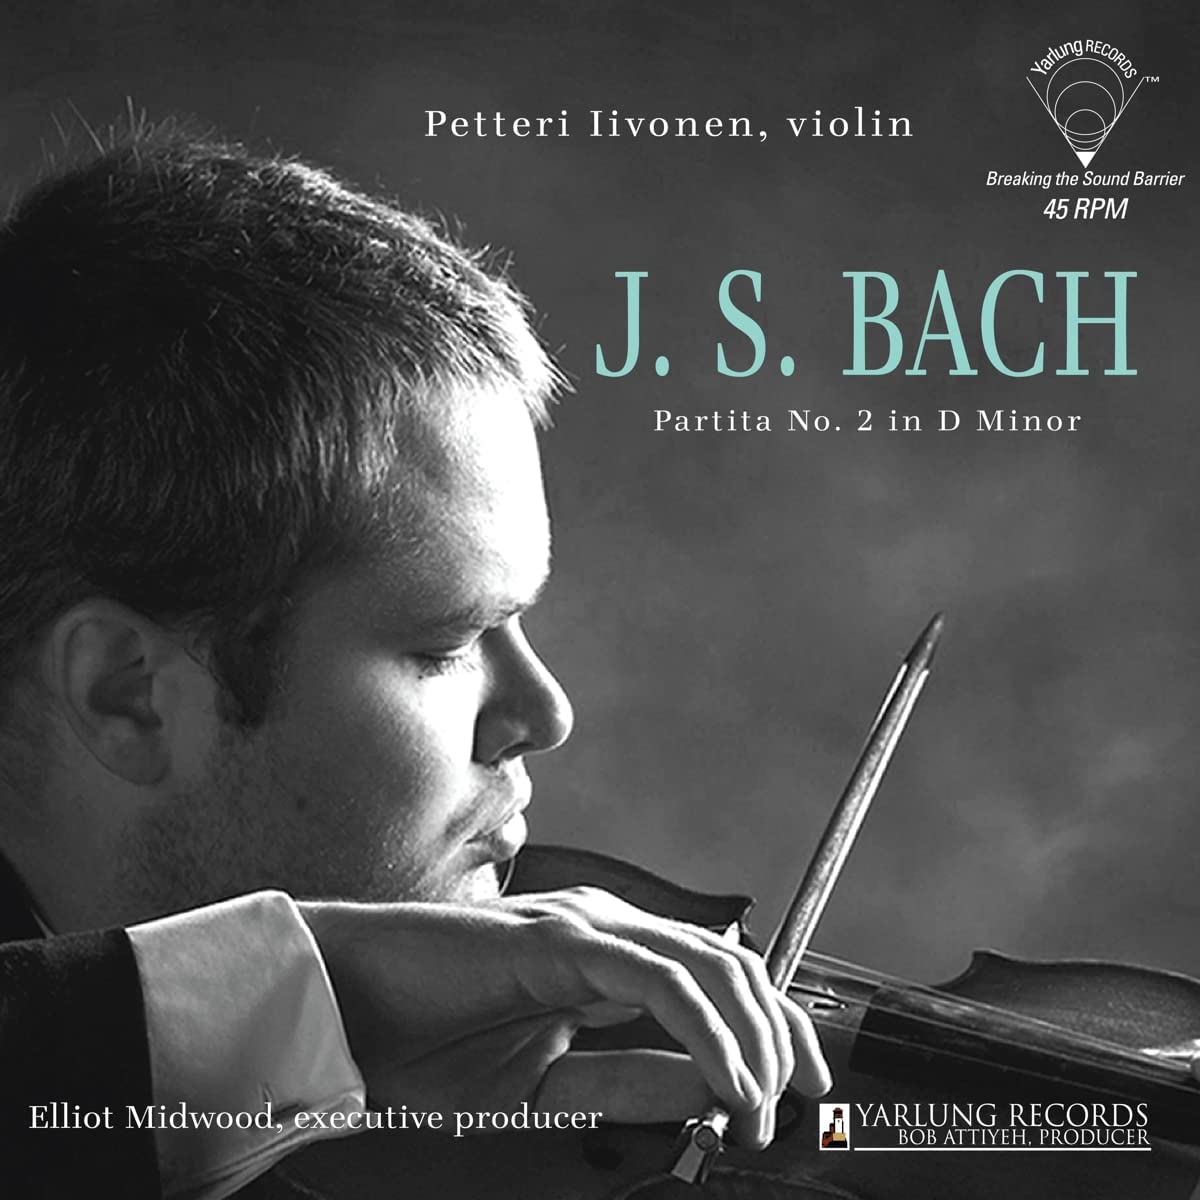 Vinile Petteri Iivonen: Plays J.S.Bach Partita No. 2 In D Minor NUOVO SIGILLATO, EDIZIONE DEL 25/05/2022 SUBITO DISPONIBILE